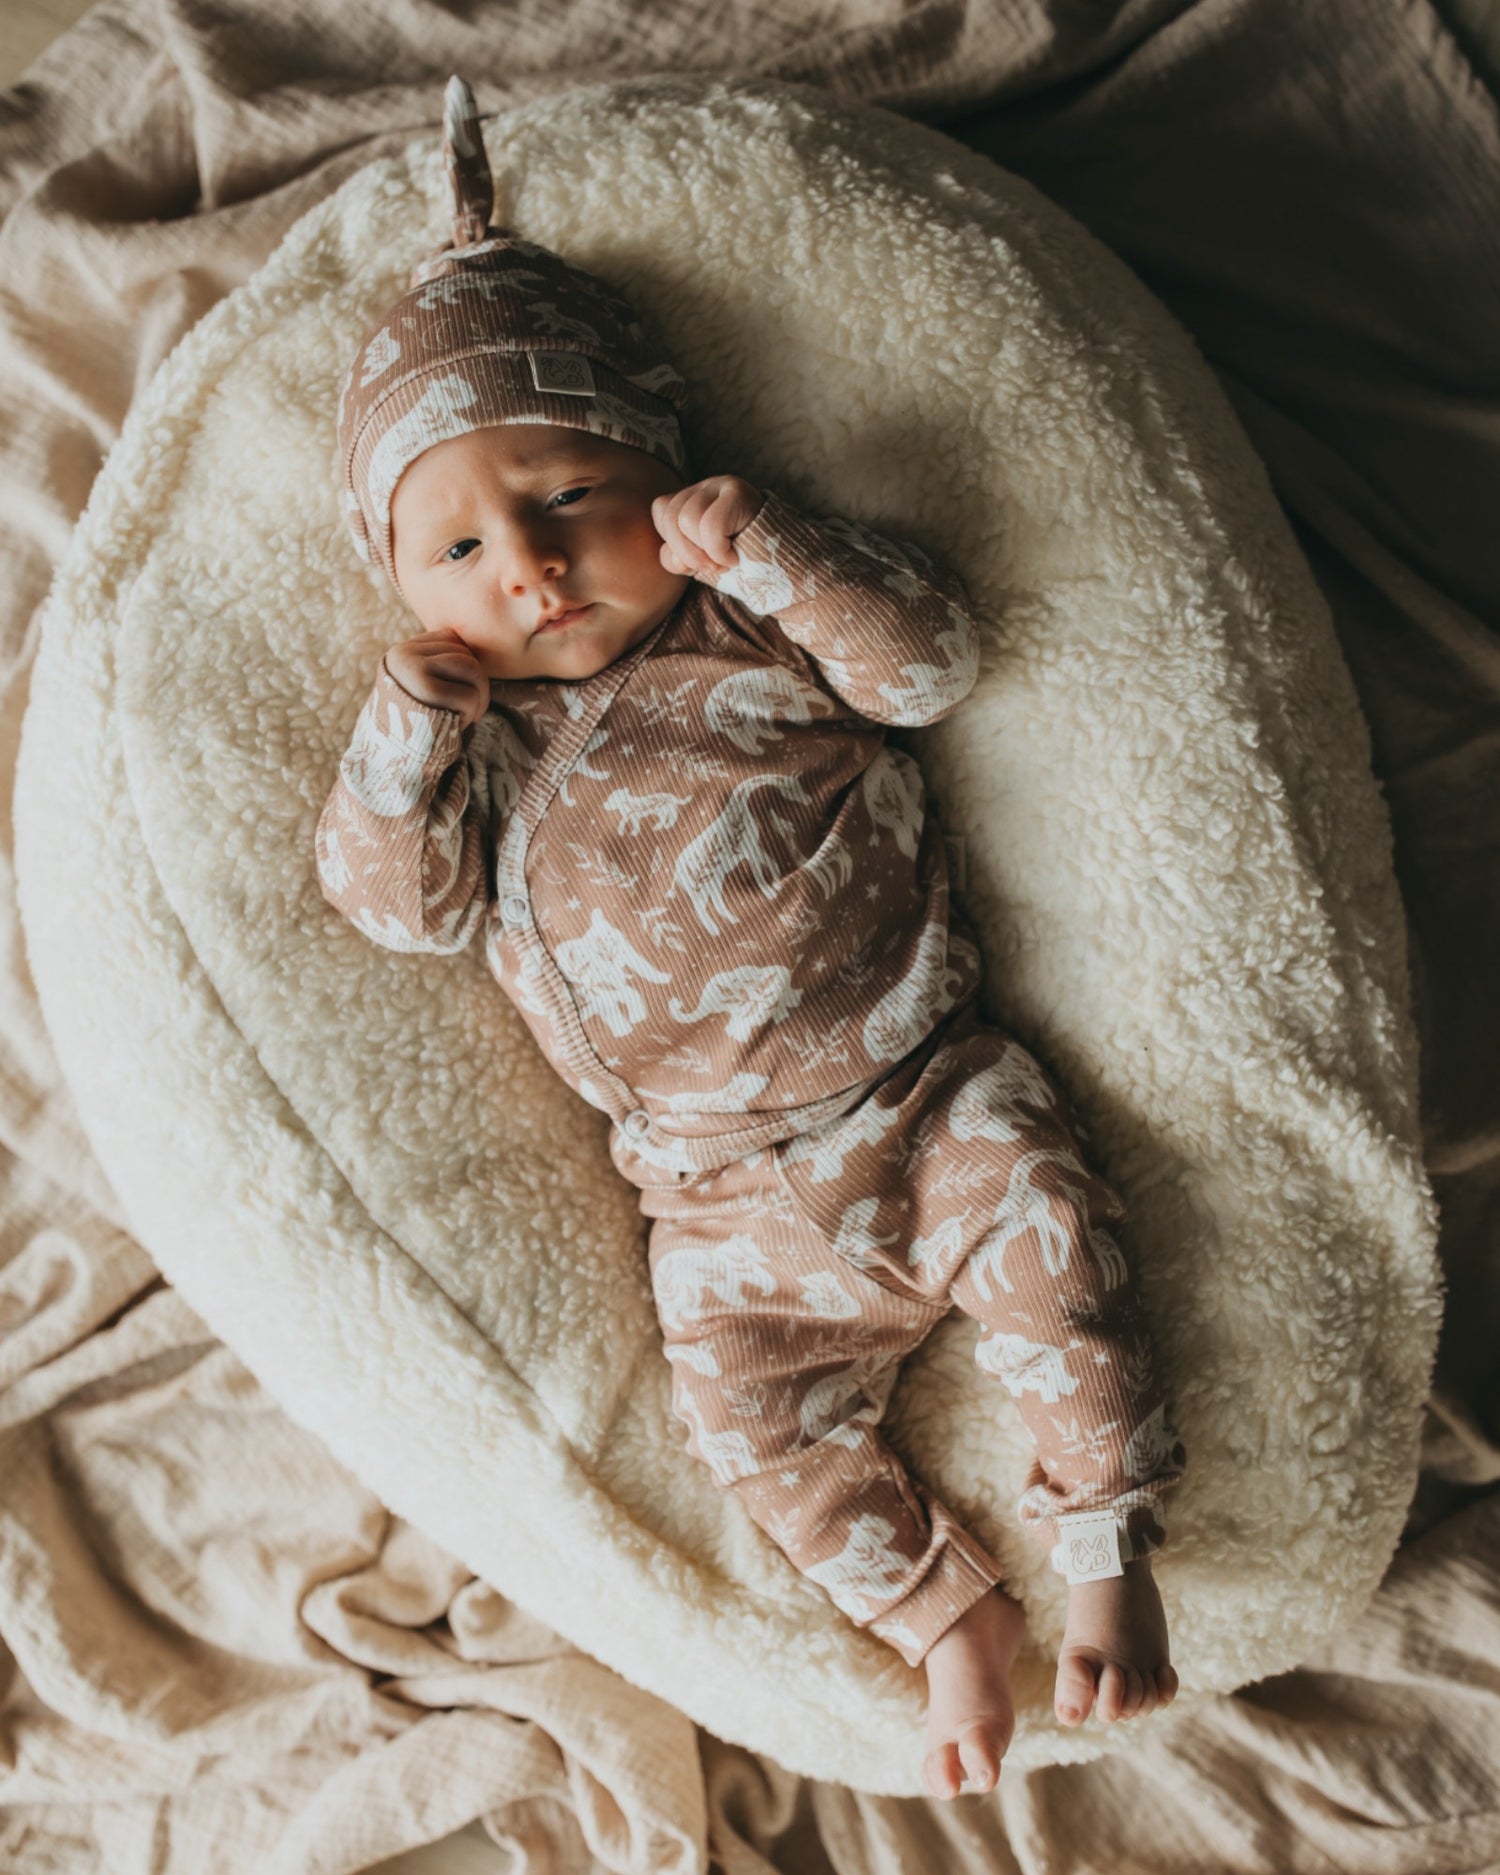 Een vredige pasgeboren baby gekleed in een rompertje met patroon en bijpassende Muts Boho Jungle, heerlijk slapend in een knus mandje omringd door zachte, crèmekleurige dekens.